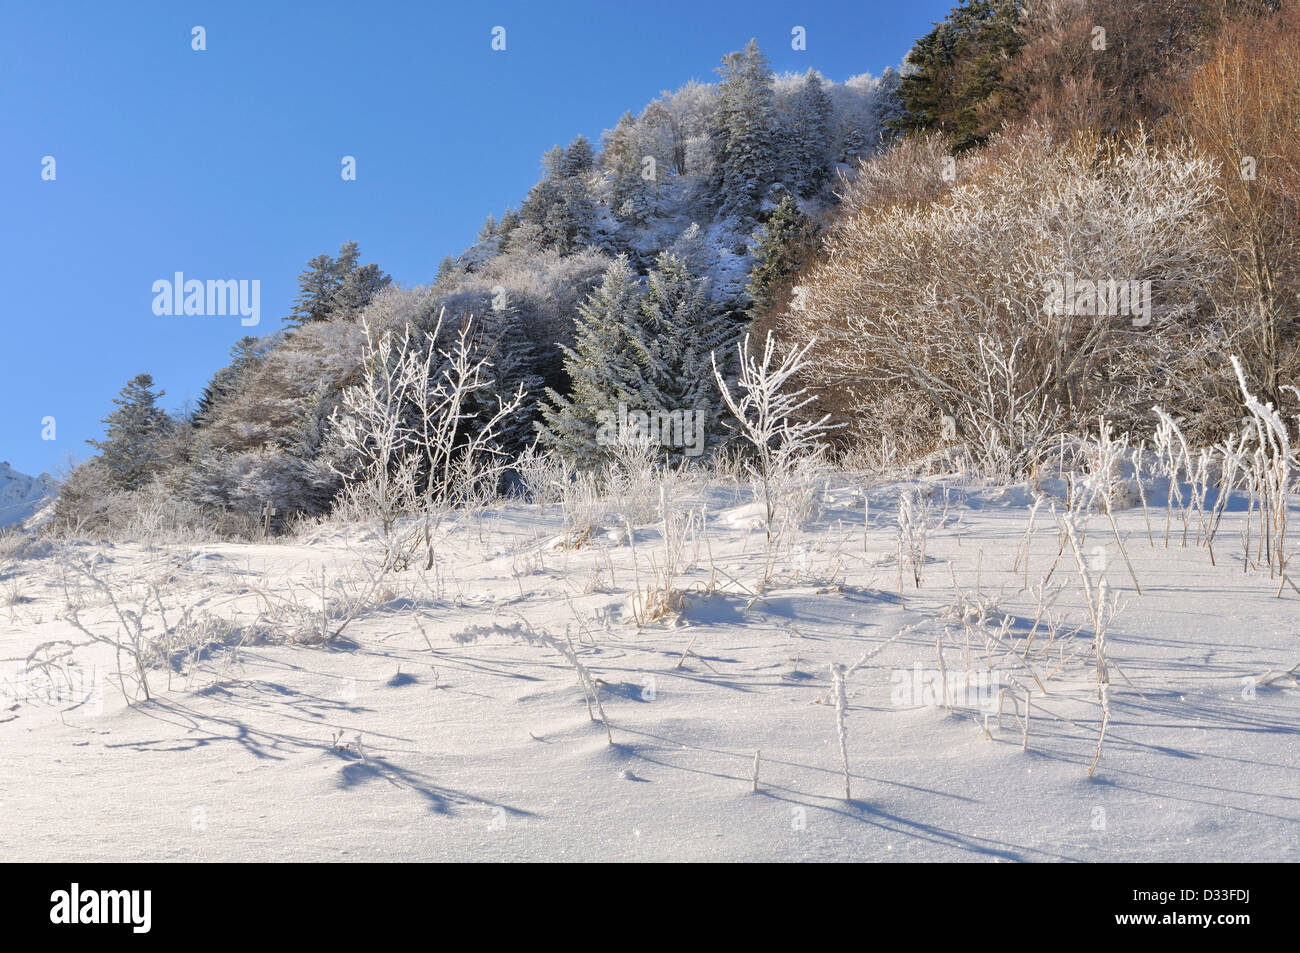 La neve che ricopre la vegetazione montana sotto un bel cielo blu Foto Stock